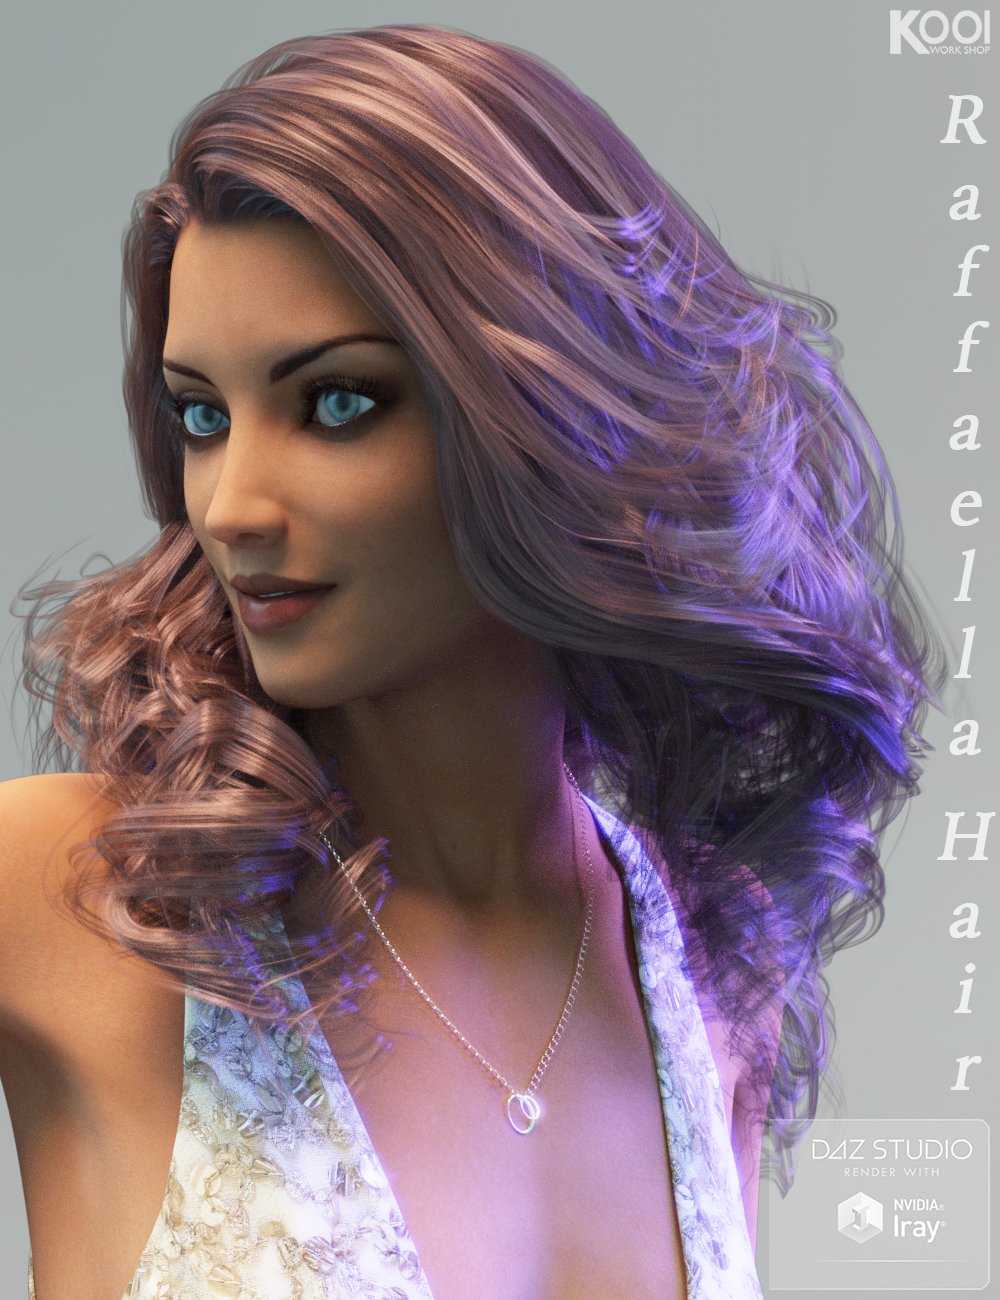 Raffaella Hair for Genesis 3 Female(s) by: Kool, 3D Models by Daz 3D